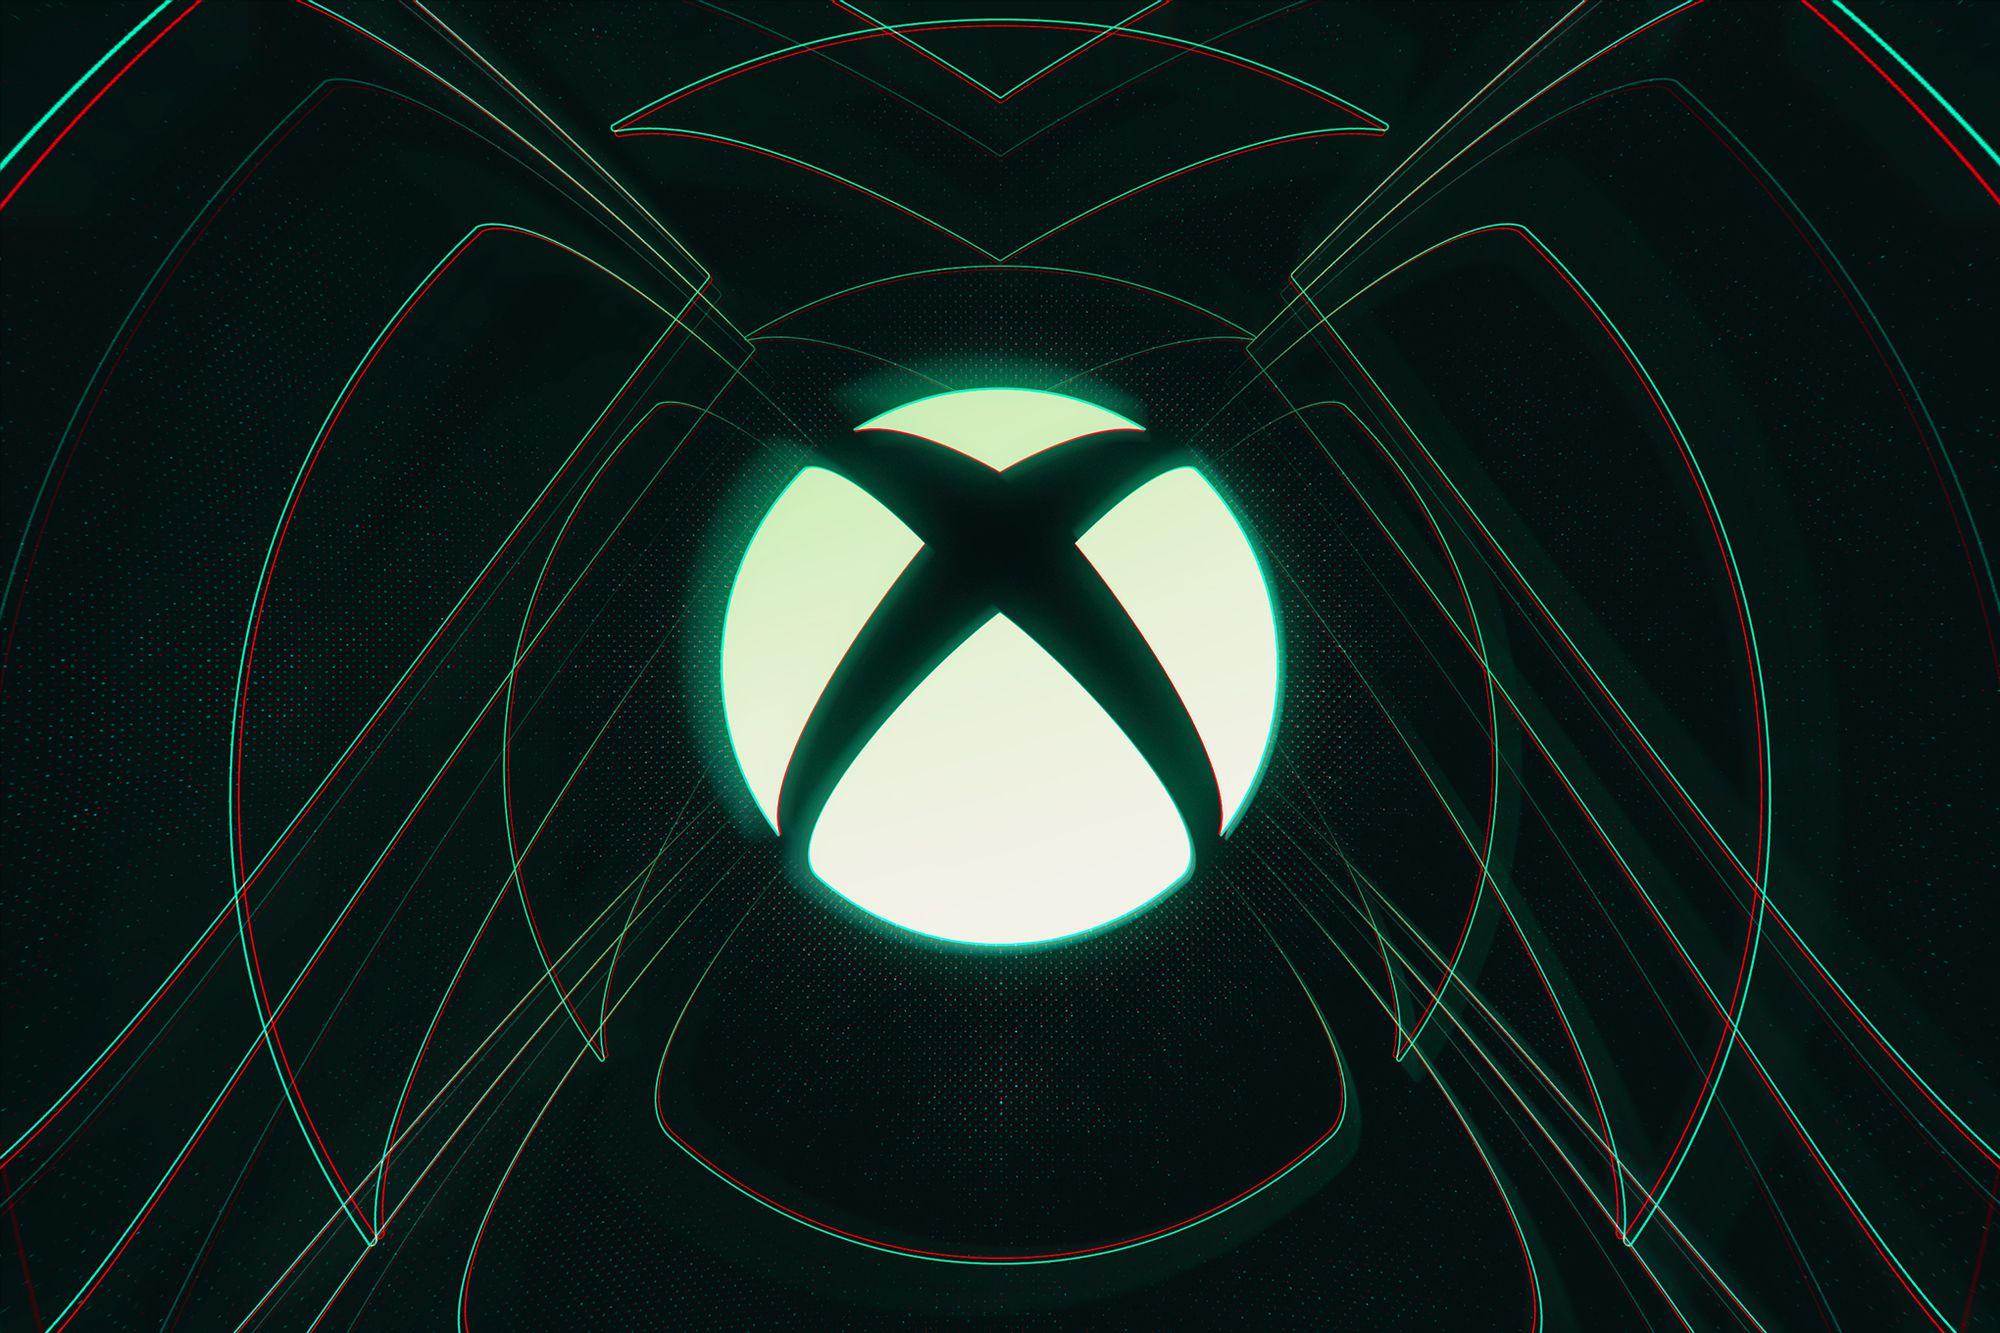 Nahaufnahme des Xbox-Logos auf schwarzem Hintergrund mit grünen Linien.